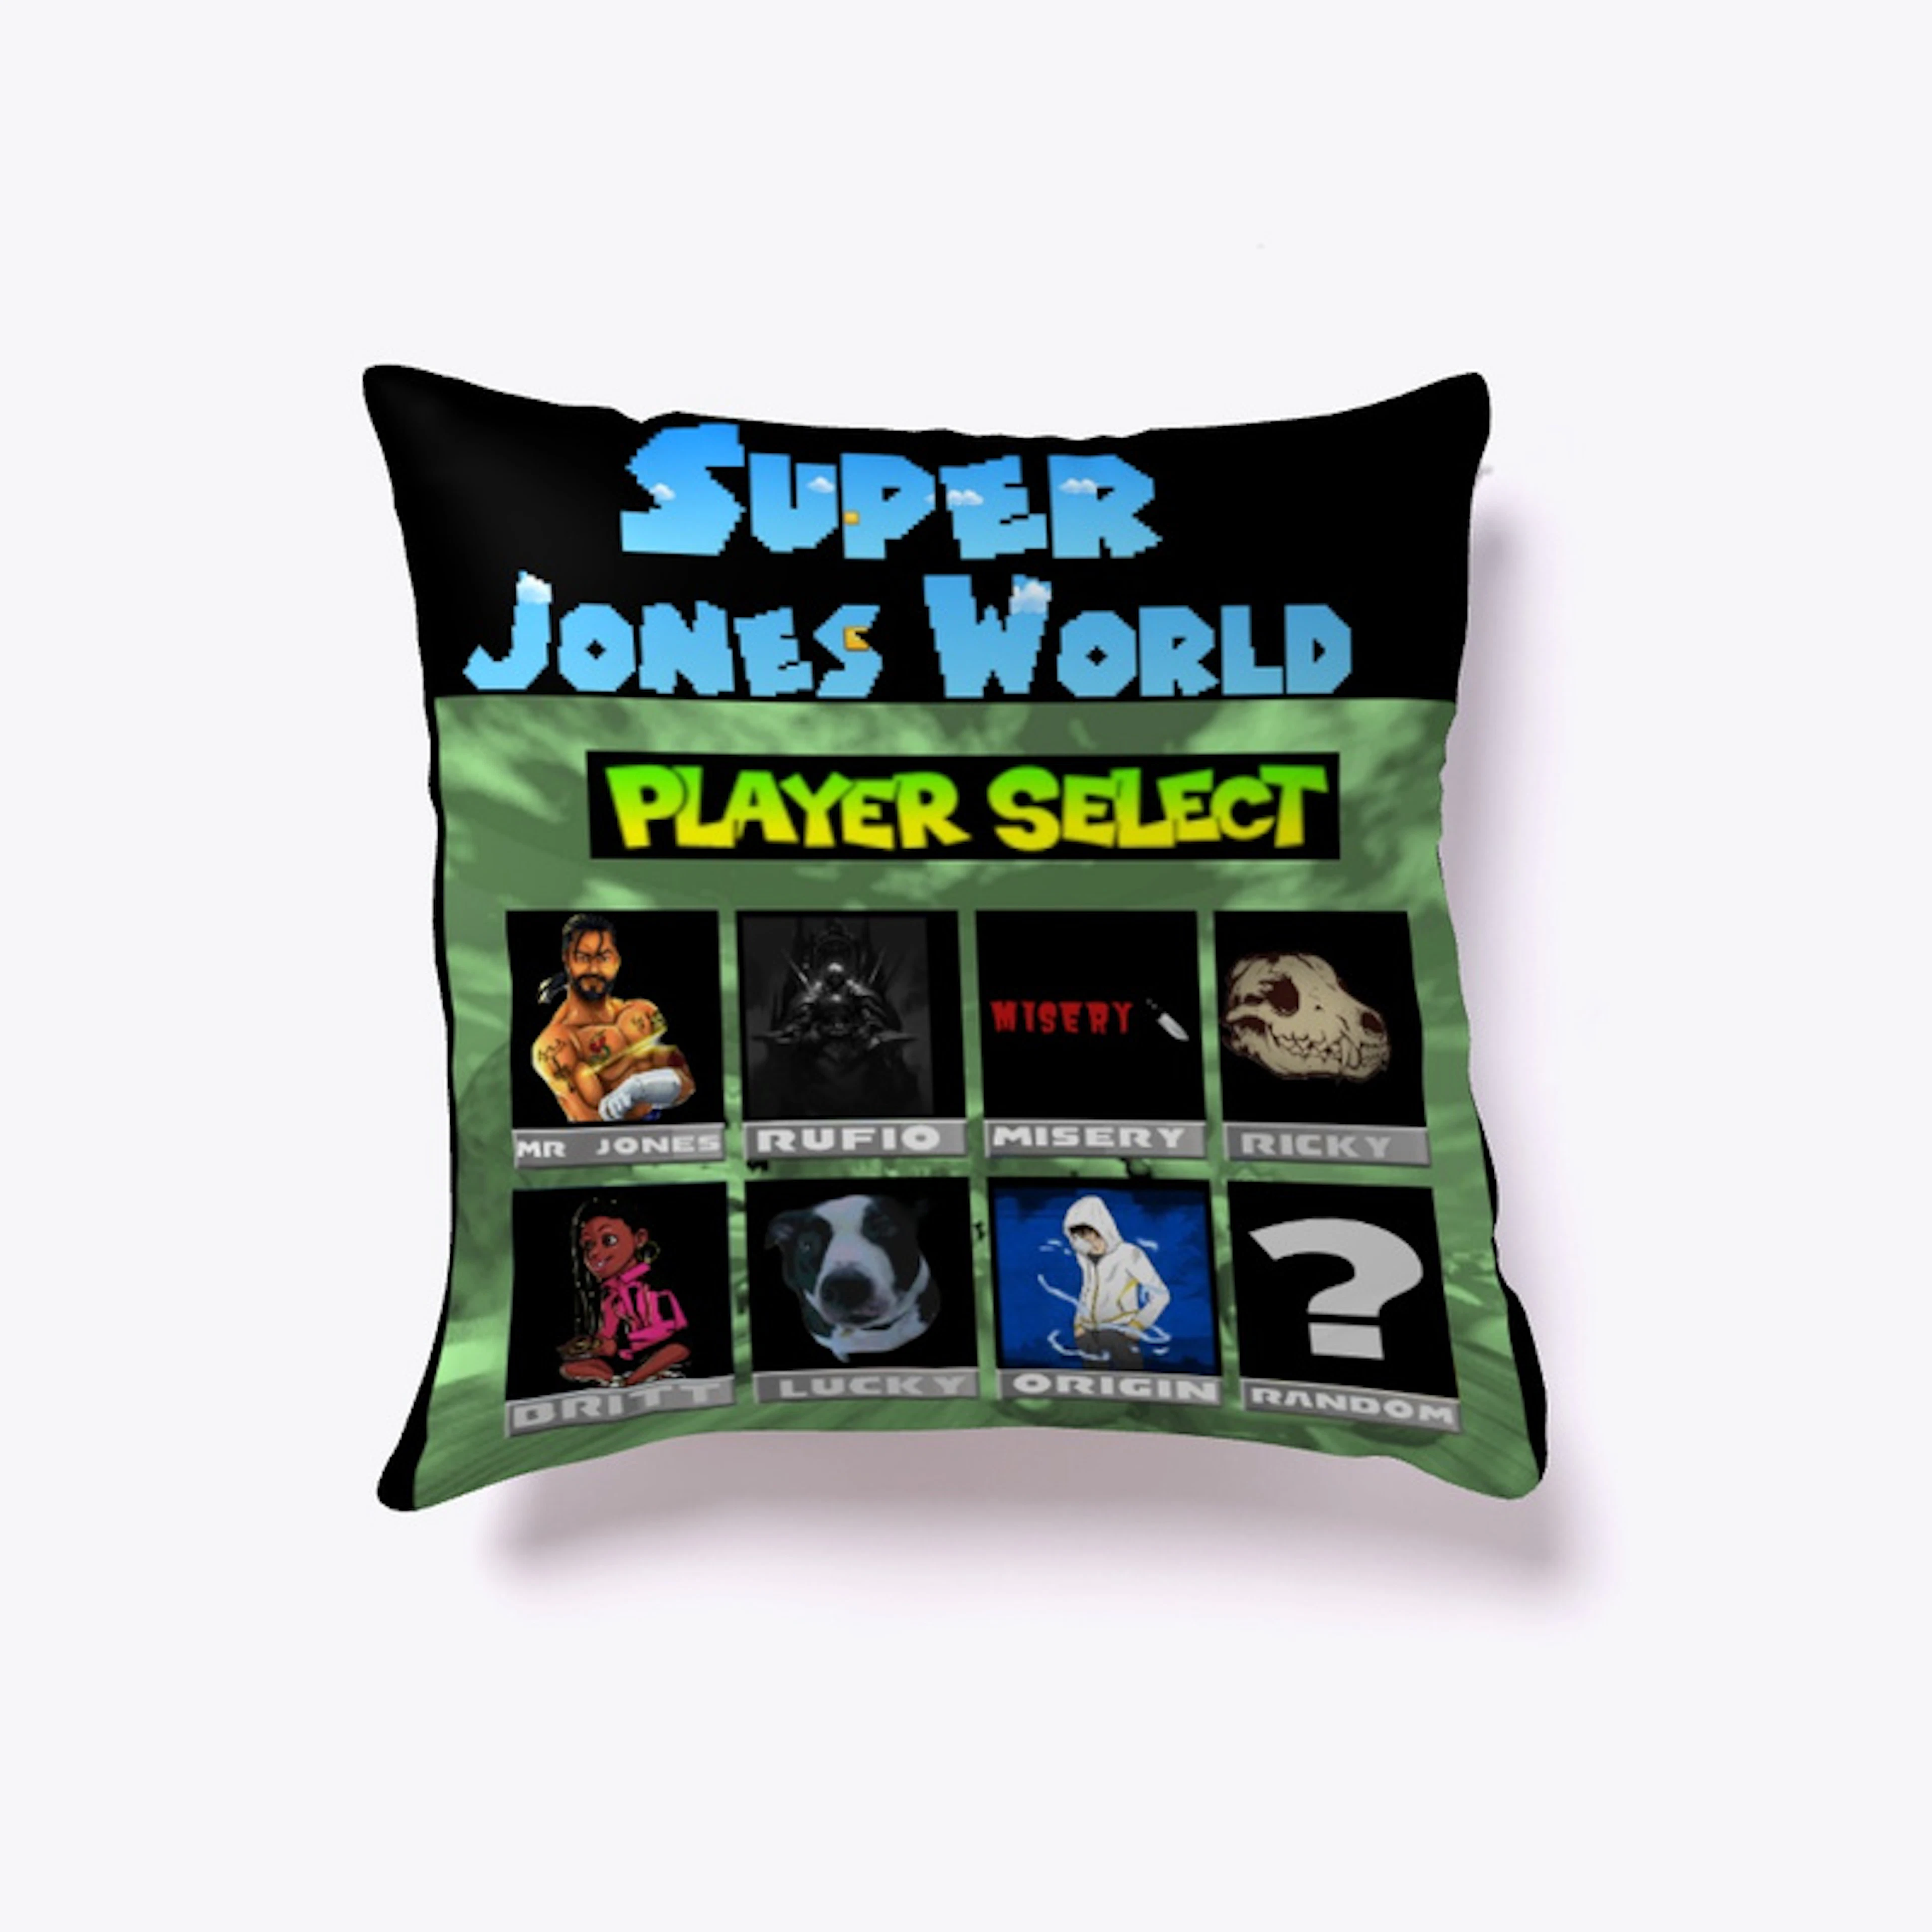 Super Jones World tee